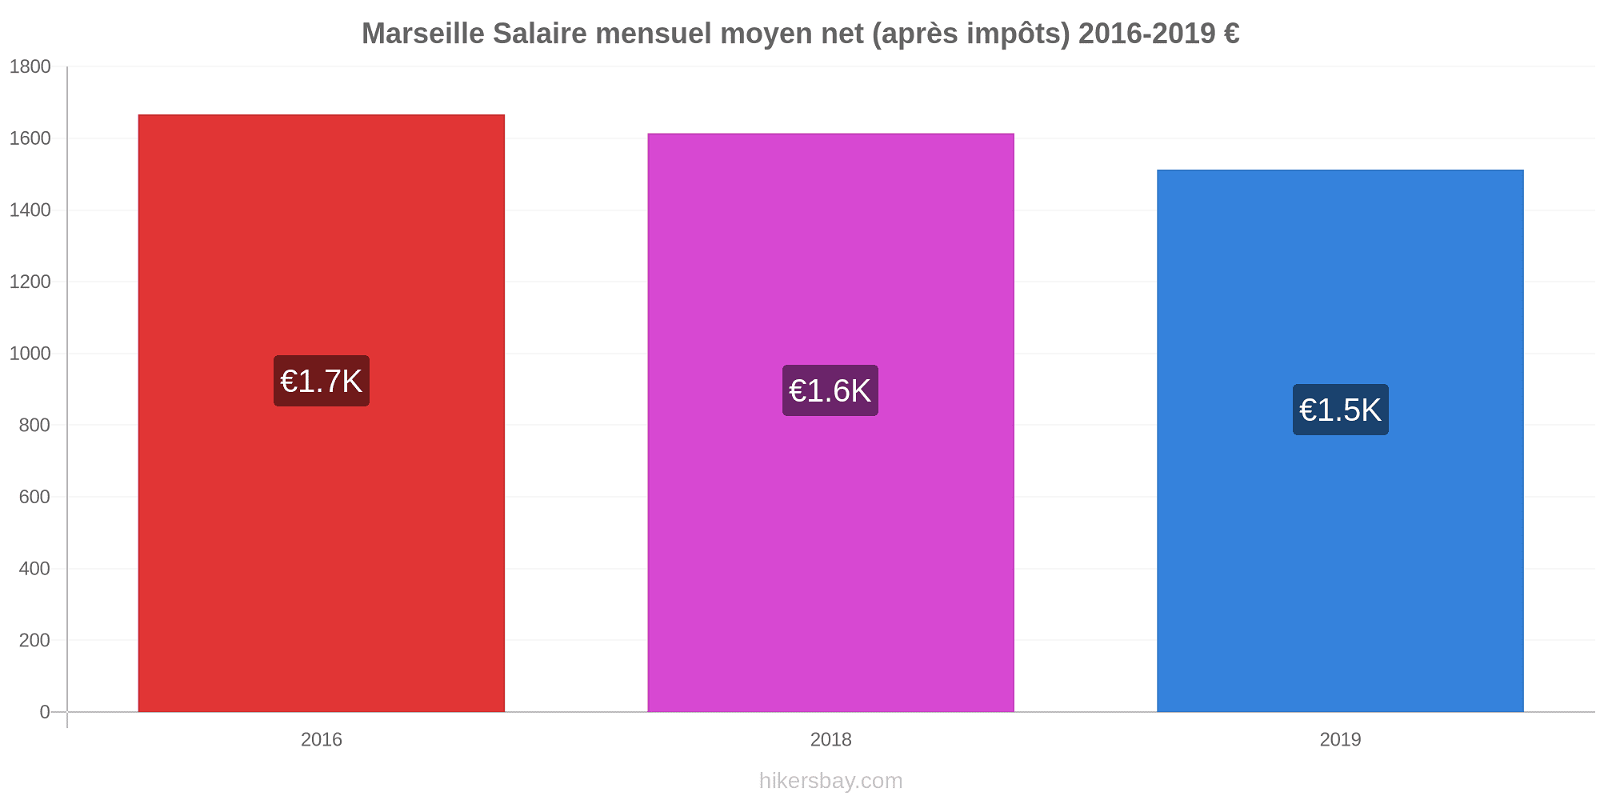 Marseille changements de prix Salaire mensuel Net (après impôts) hikersbay.com